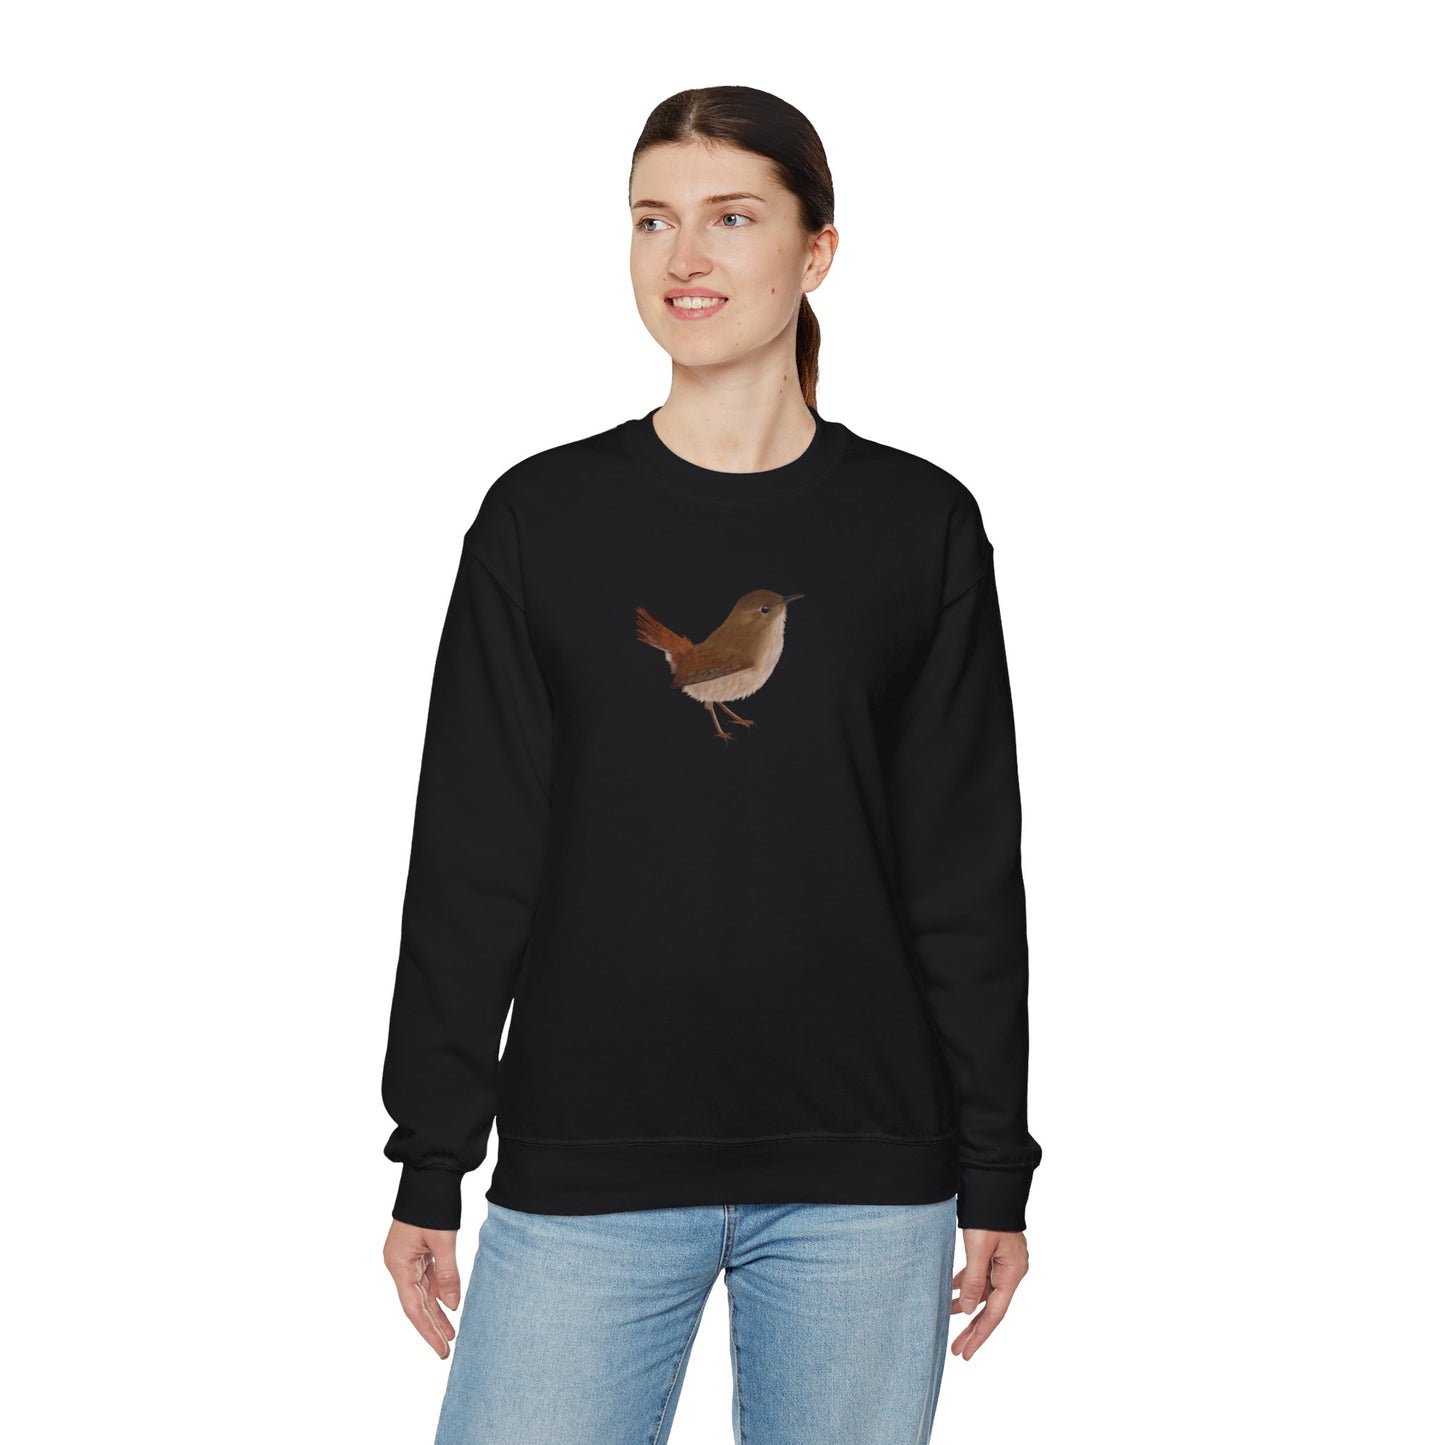 Wren Bird Watcher Biologist Crewneck Sweatshirt